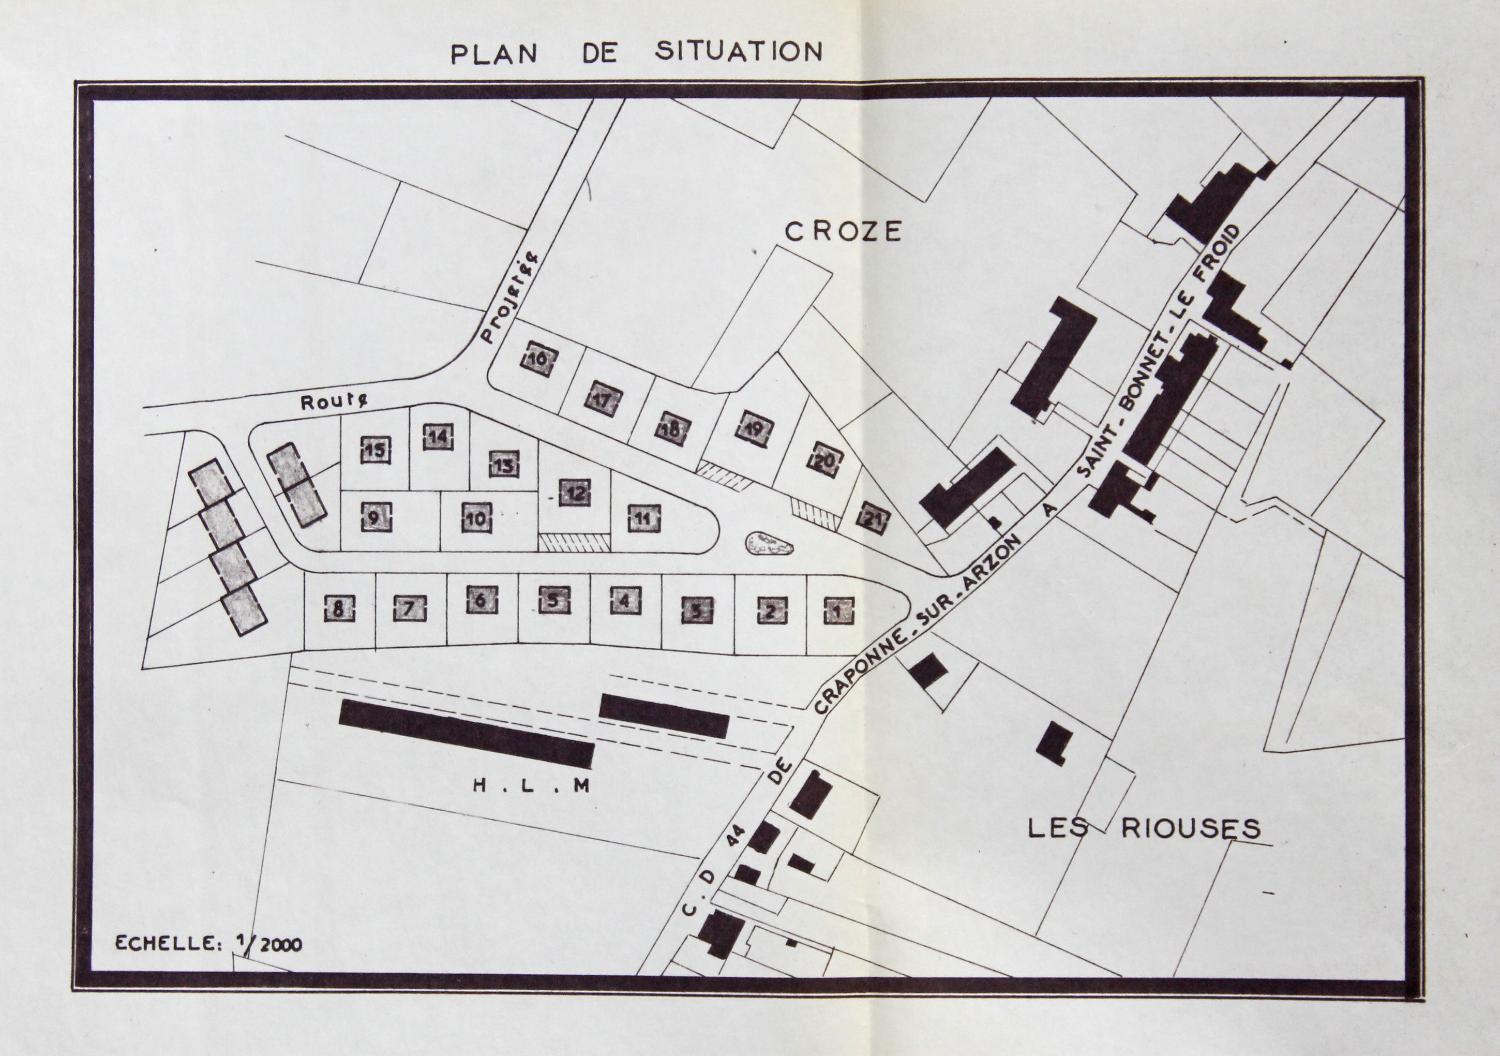 Les immeubles HLM de la Croix-Saint-Romain et le lotissement Les Érables à Sainte-Sigolène.